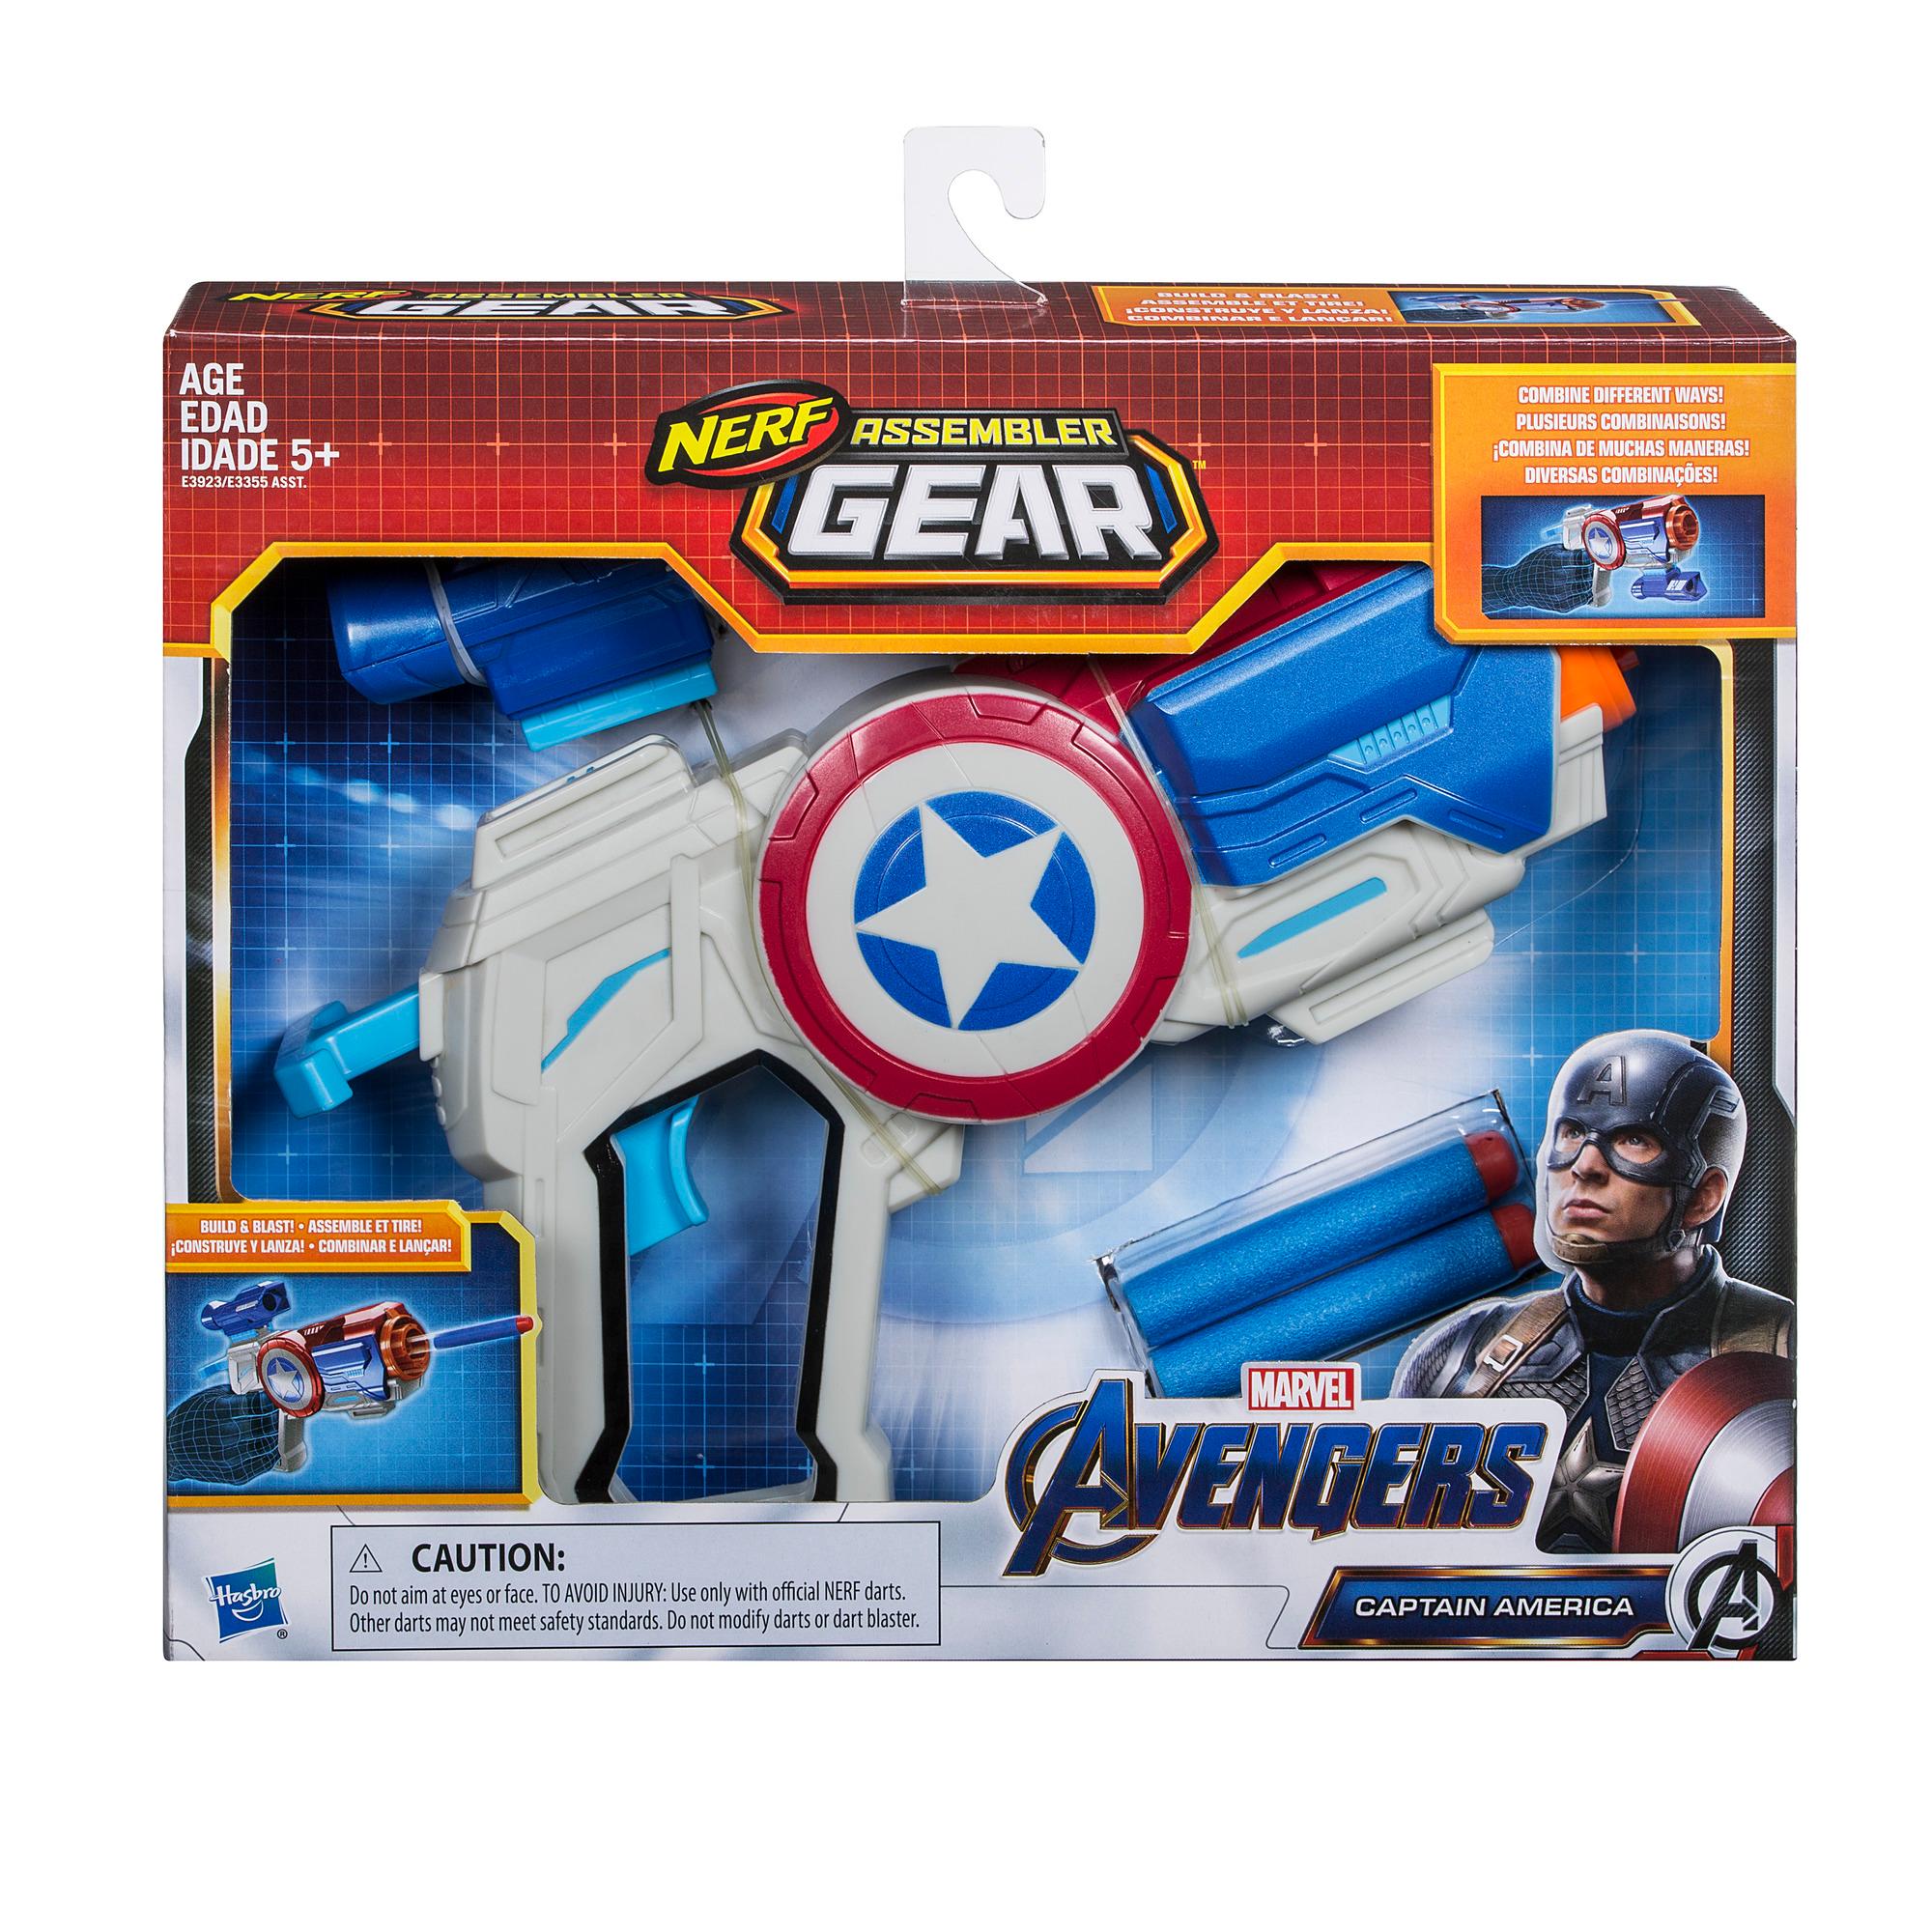 Avengers: Endgame Nerf Captain America Assembler Gear